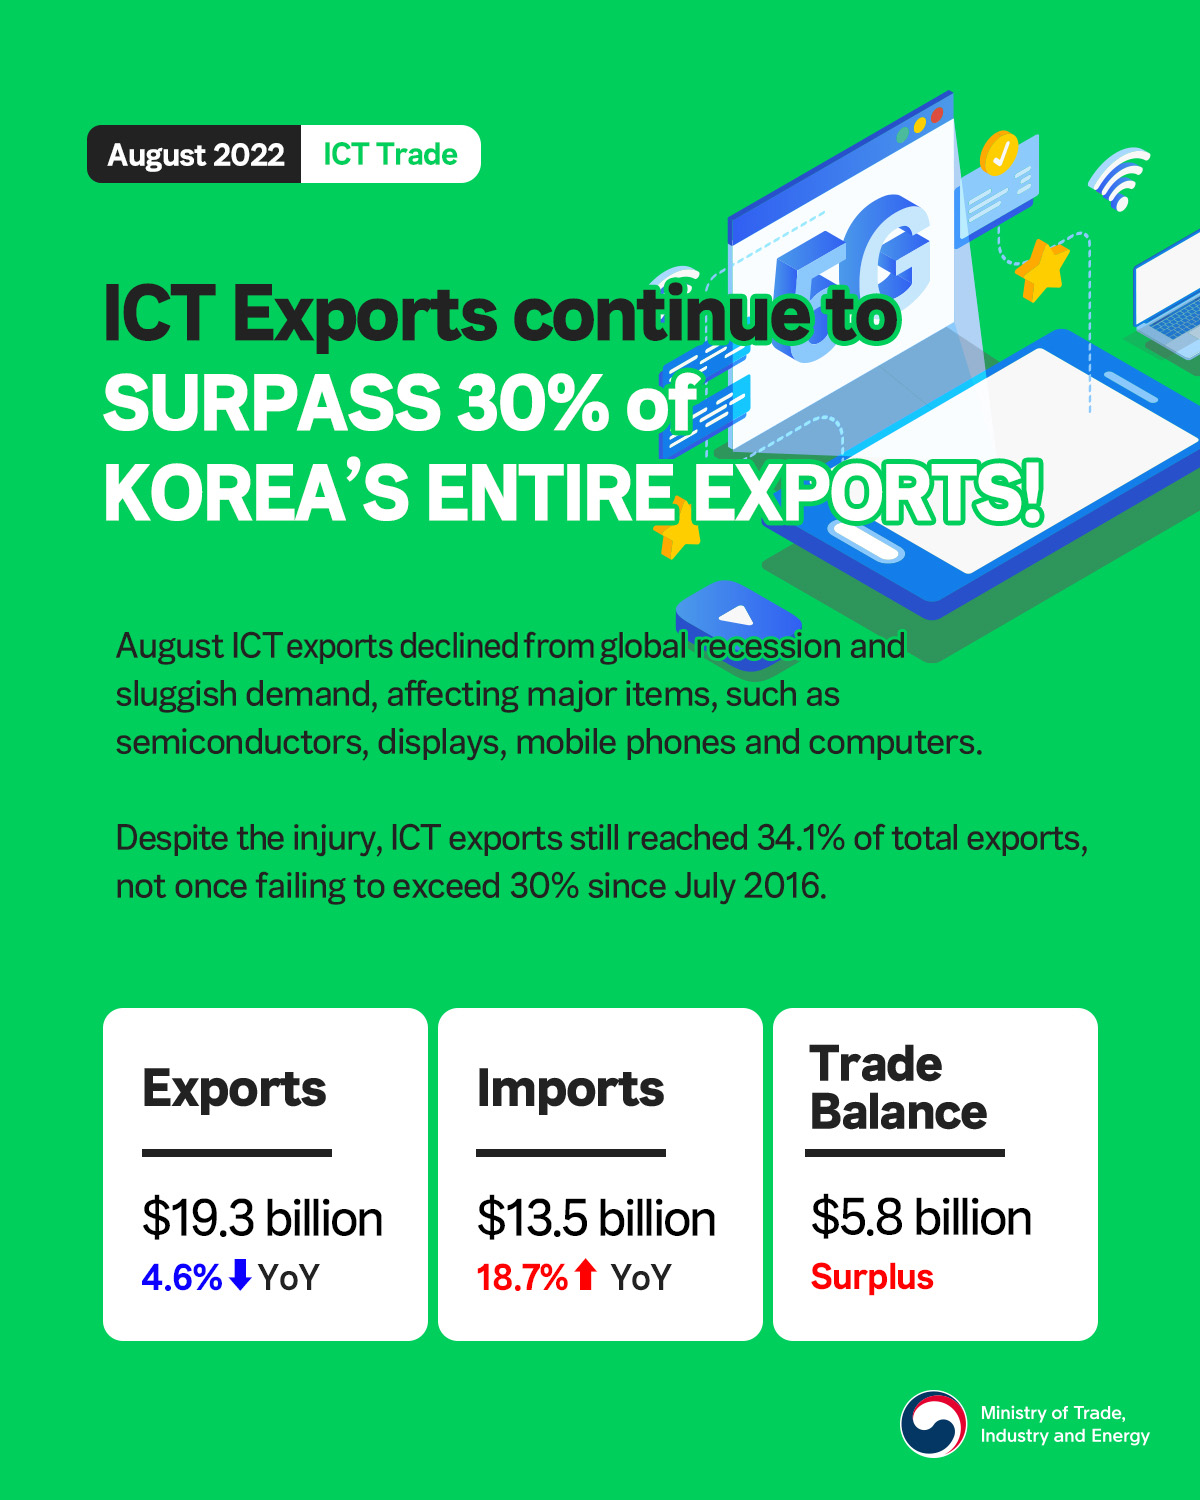 Korea's ICT exports decline 4.6% in August Image 0